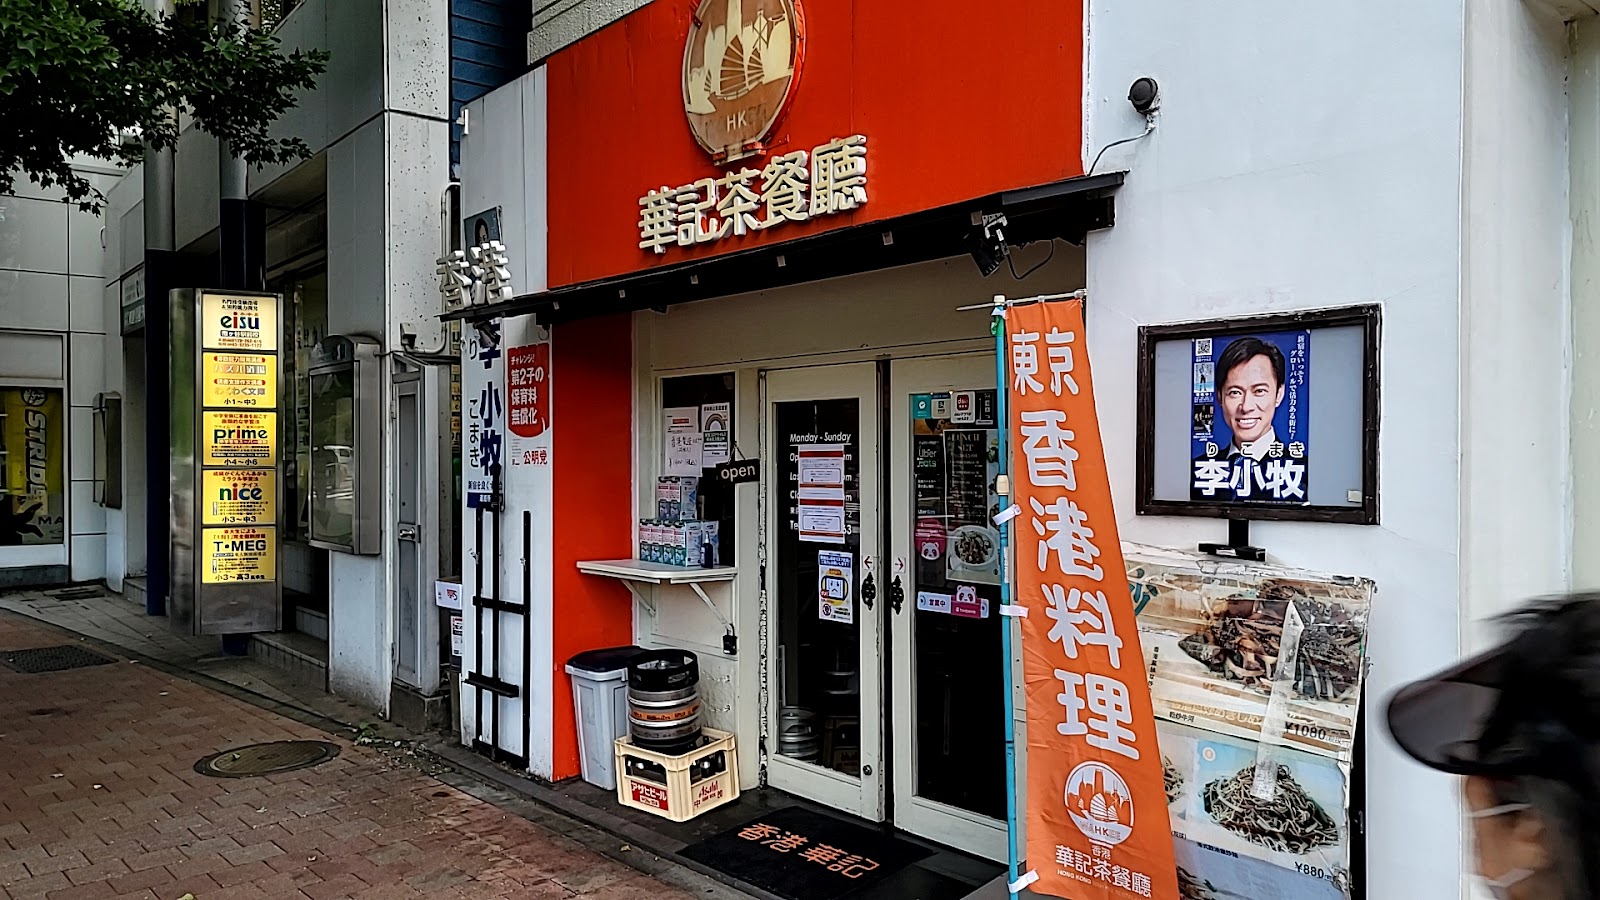 香港華記茶餐廰 新宿店(ホンコンワーキーチャーチャンテン)にて